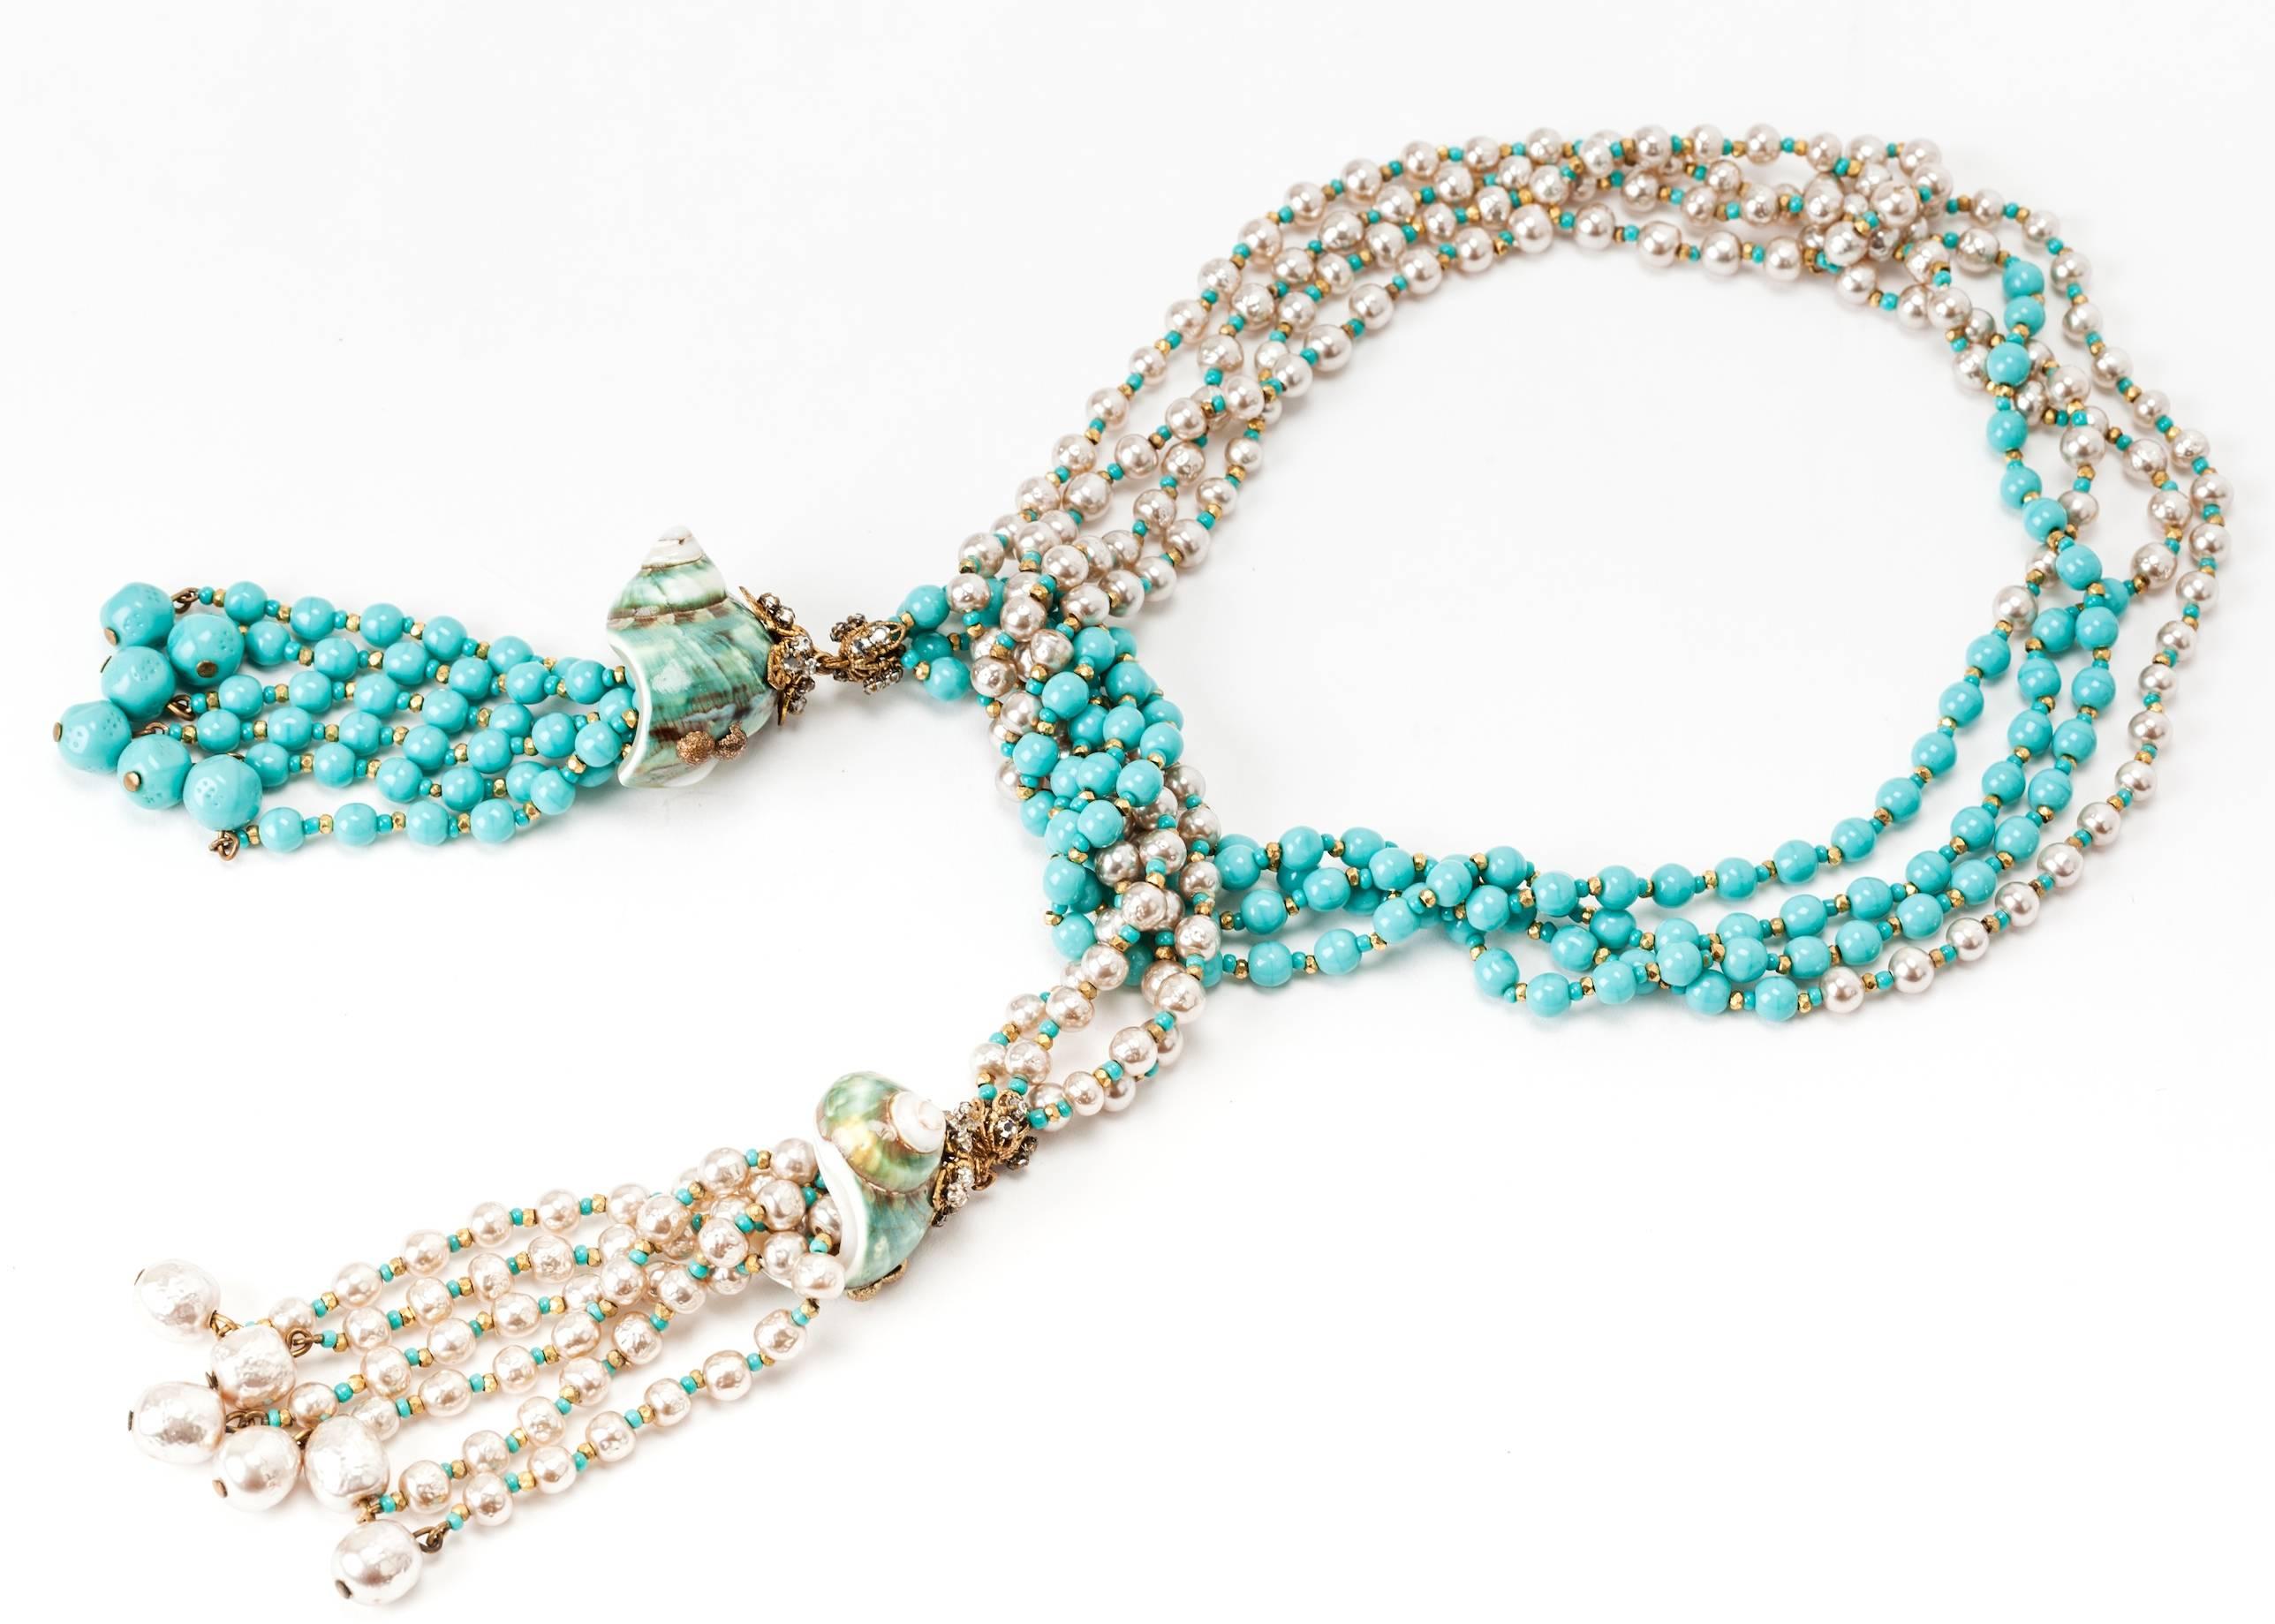 Merveilleuse, ancienne et rare suite Miriam Haskell composée d'un lariat, de boucles d'oreilles à clip et d'un bracelet. 
Les fausses perles de la marque Haskell sont associées à des perles en pate de verre turquoise et à des intercalaires en métal